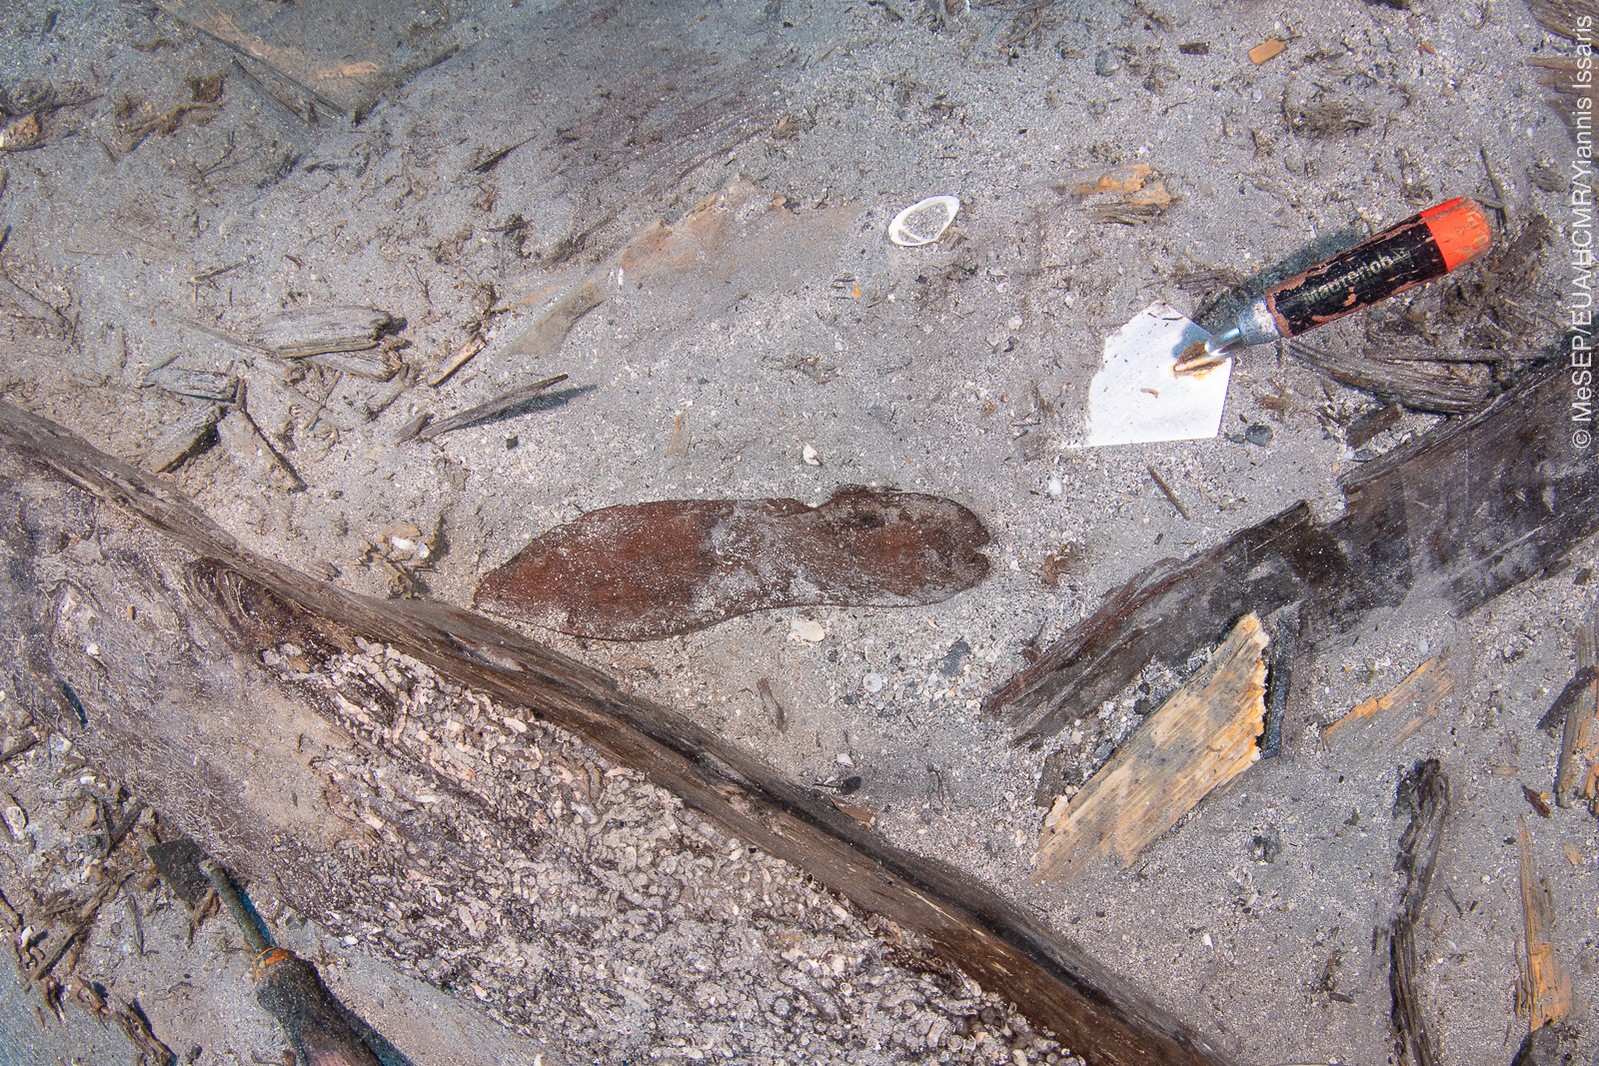 Sola de couro de um sapato é encontrada no navio naufragado (Foto: Yiannis Issaris)